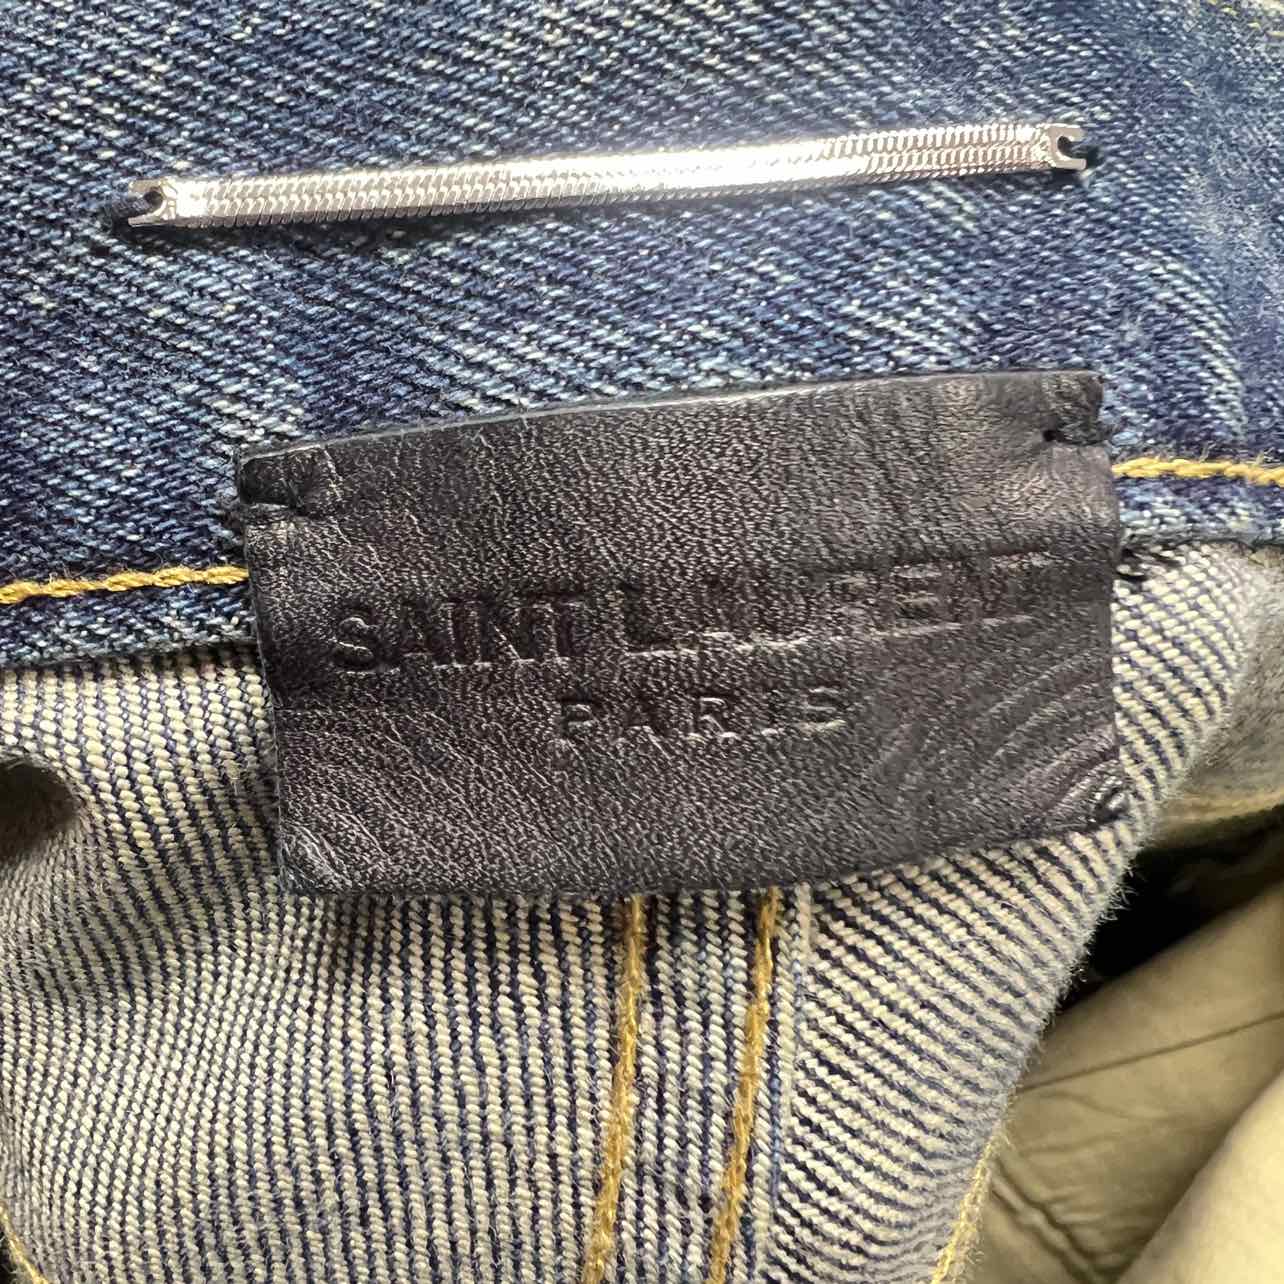 Saint Laurent Jeans "LIGHT WASH" Blue Used Size 34